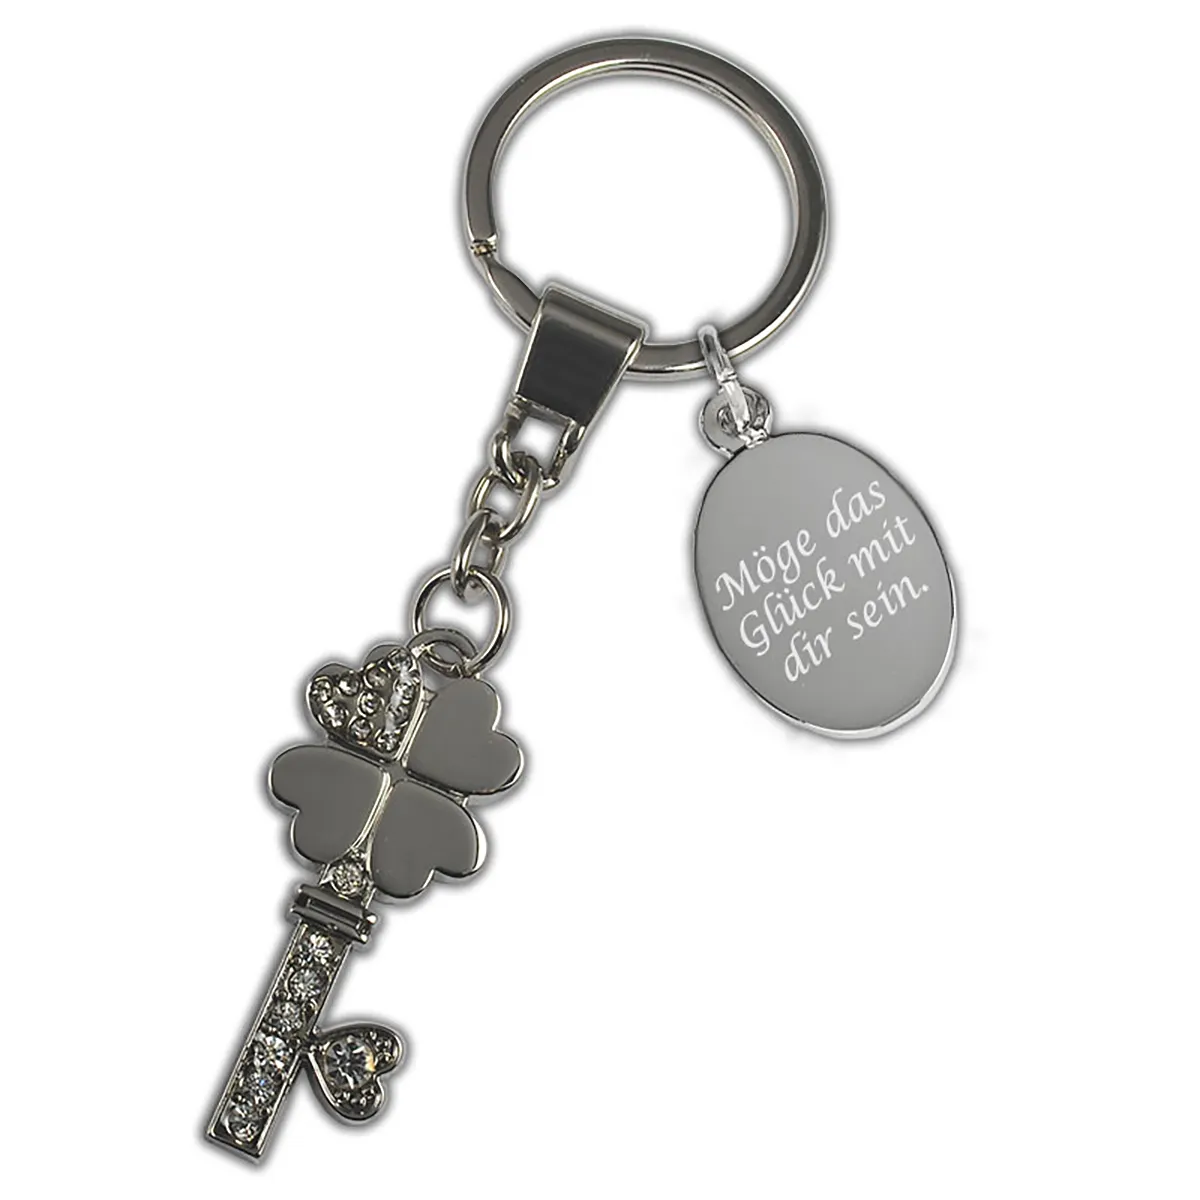 Schlüsselanhänger Keys mit funkelnde Steine und einem Kleblattschlüssel als Anhängerform inklusive Textgravur auf einer separaten ovalen Gravurplatte